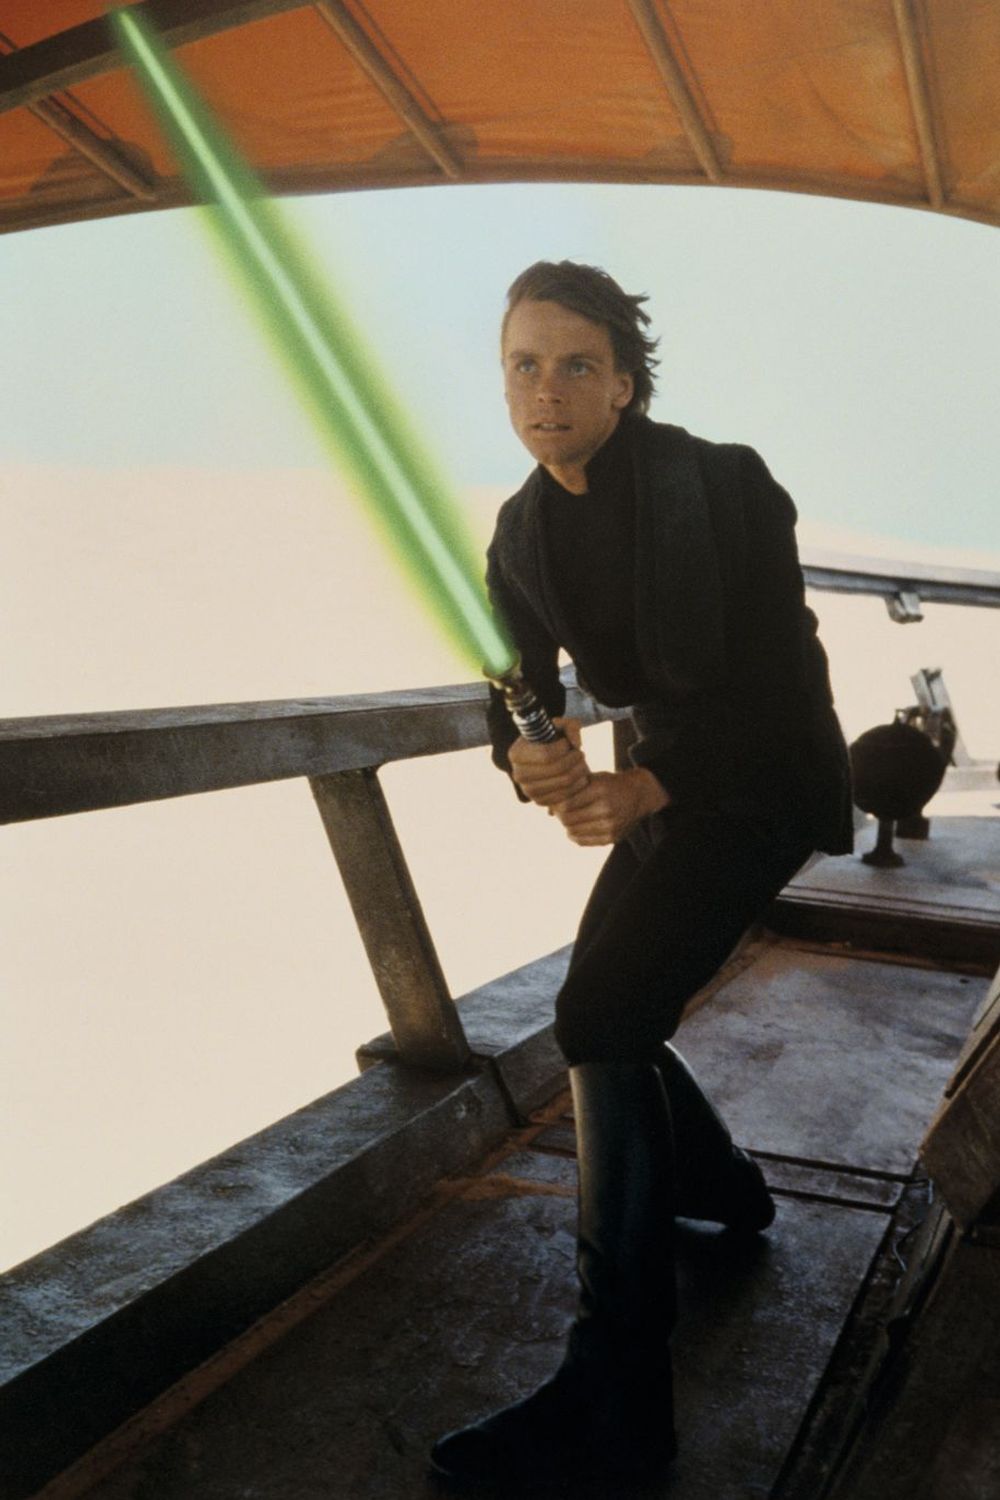 All 24 Force Powers Luke Skywalker Possesses (In Canon & Legends)